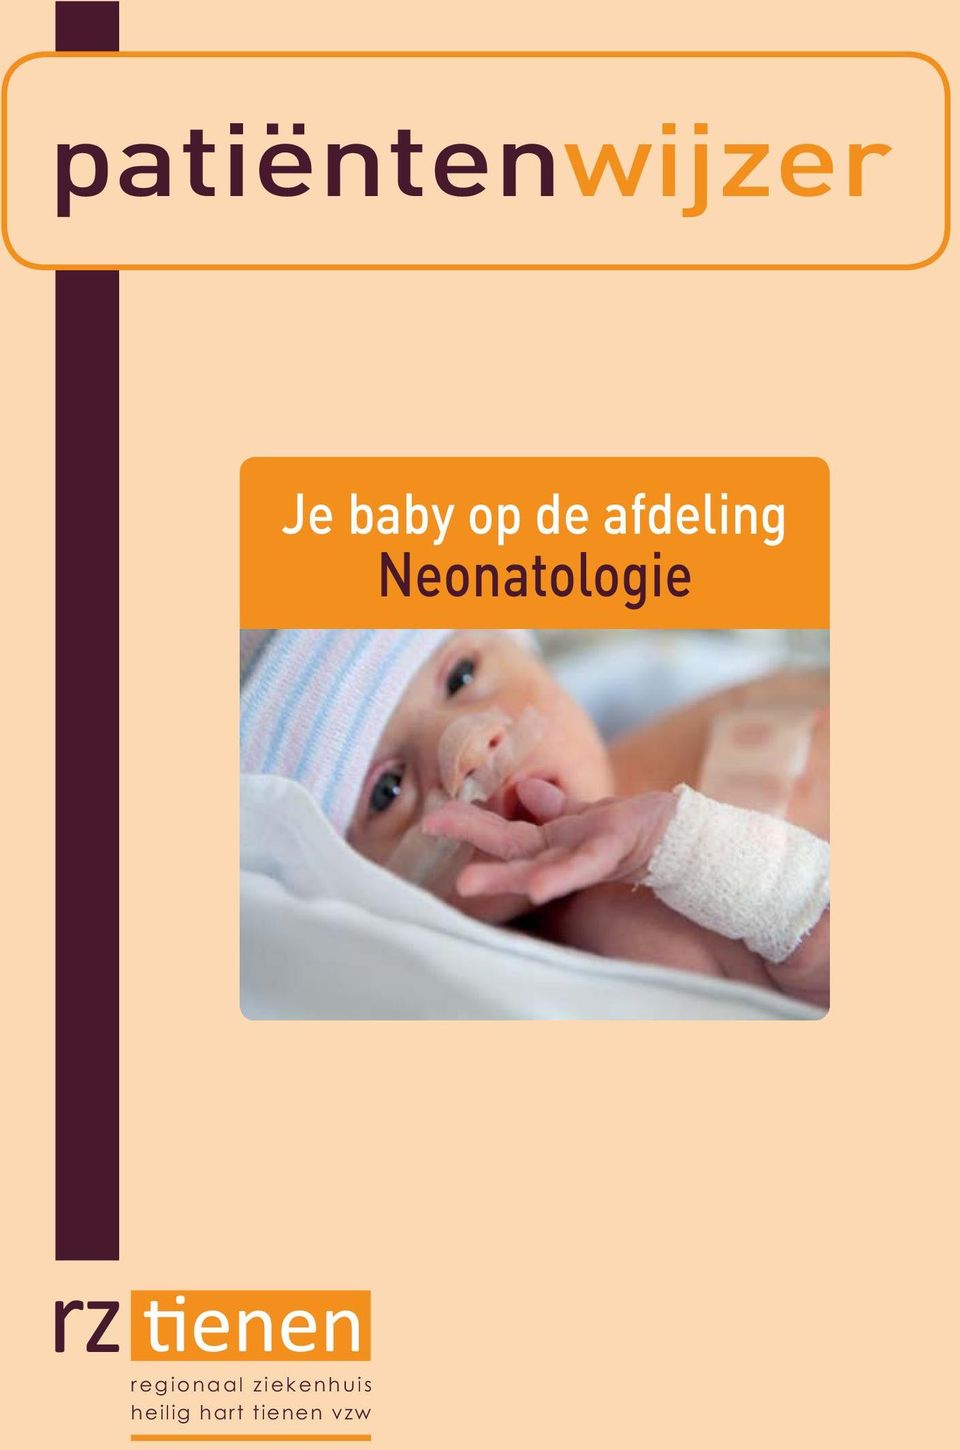 Neonatologie regionaal